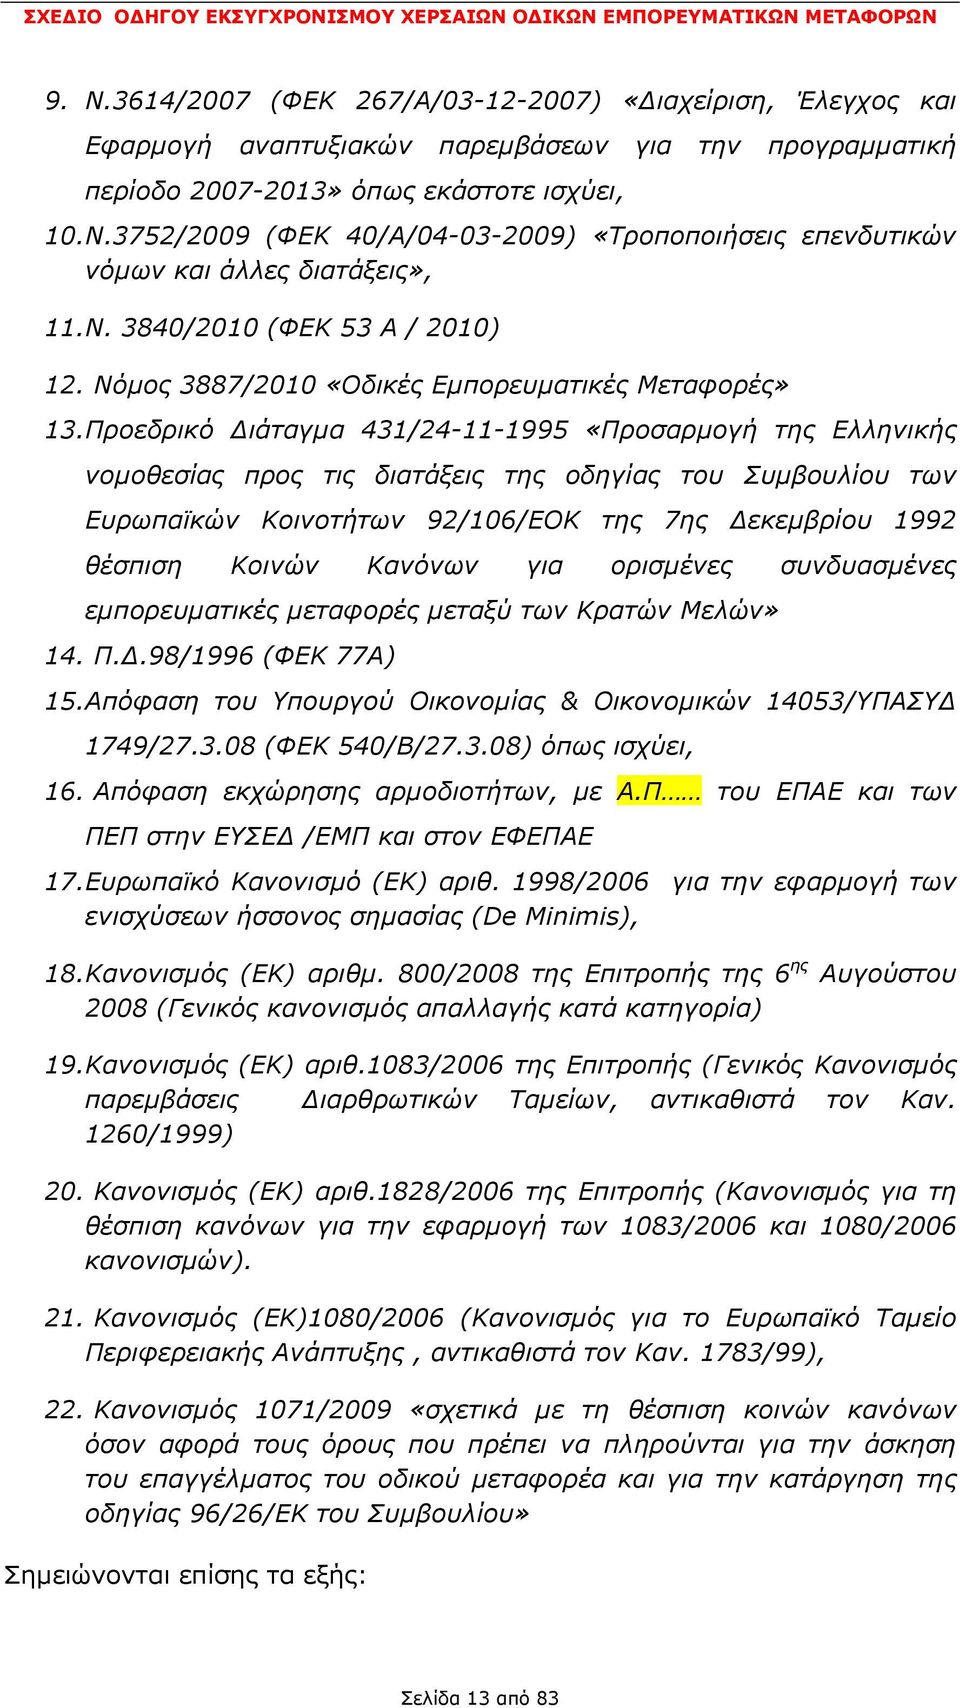 Προεδρικό ιάταγµα 431/24-11-1995 «Προσαρµογή της Ελληνικής νοµοθεσίας προς τις διατάξεις της οδηγίας του Συµβουλίου των Ευρωπαϊκών Κοινοτήτων 92/106/ΕΟΚ της 7ης εκεµβρίου 1992 θέσπιση Κοινών Κανόνων